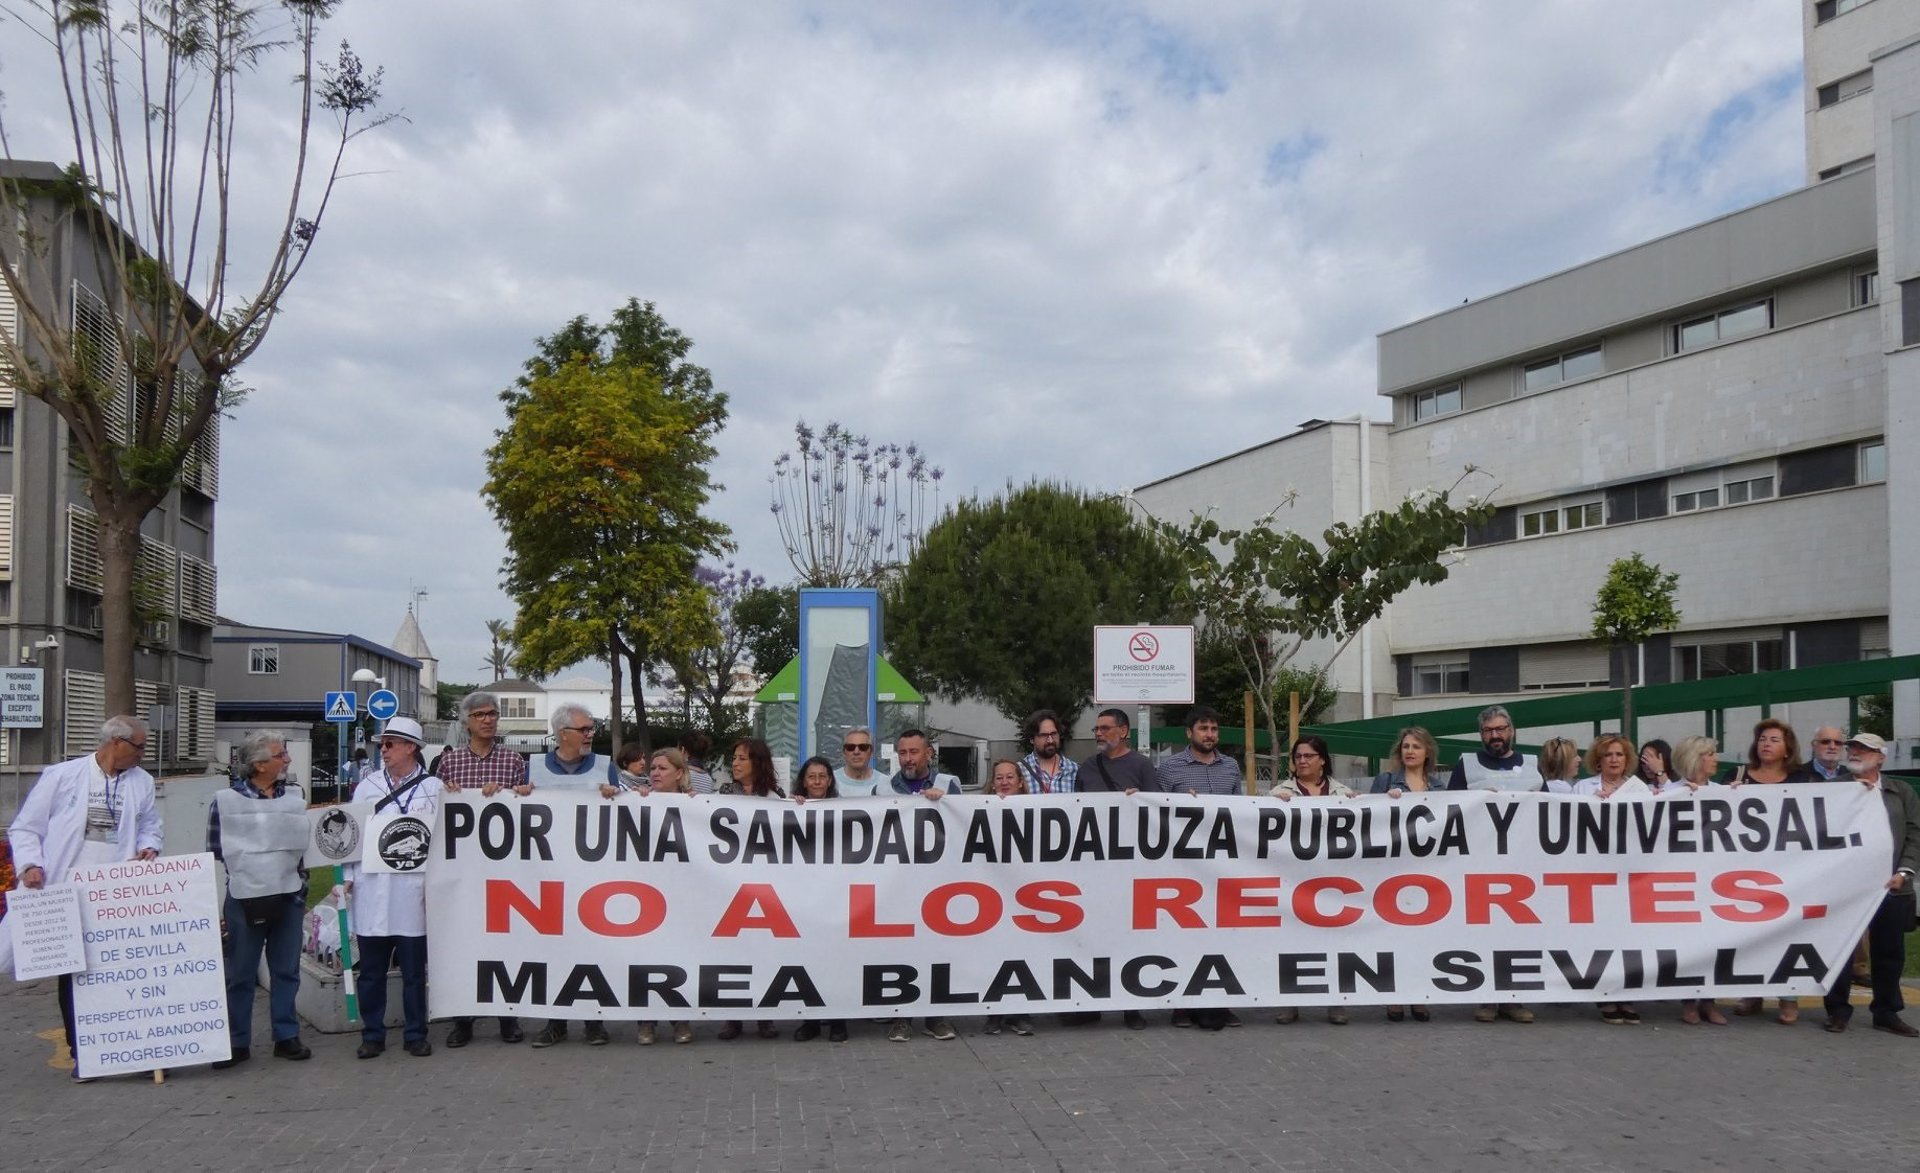 Marea Blanca protesta en varias ciudades para exigir mejor sanidad pública y no derivar fondos a la privada